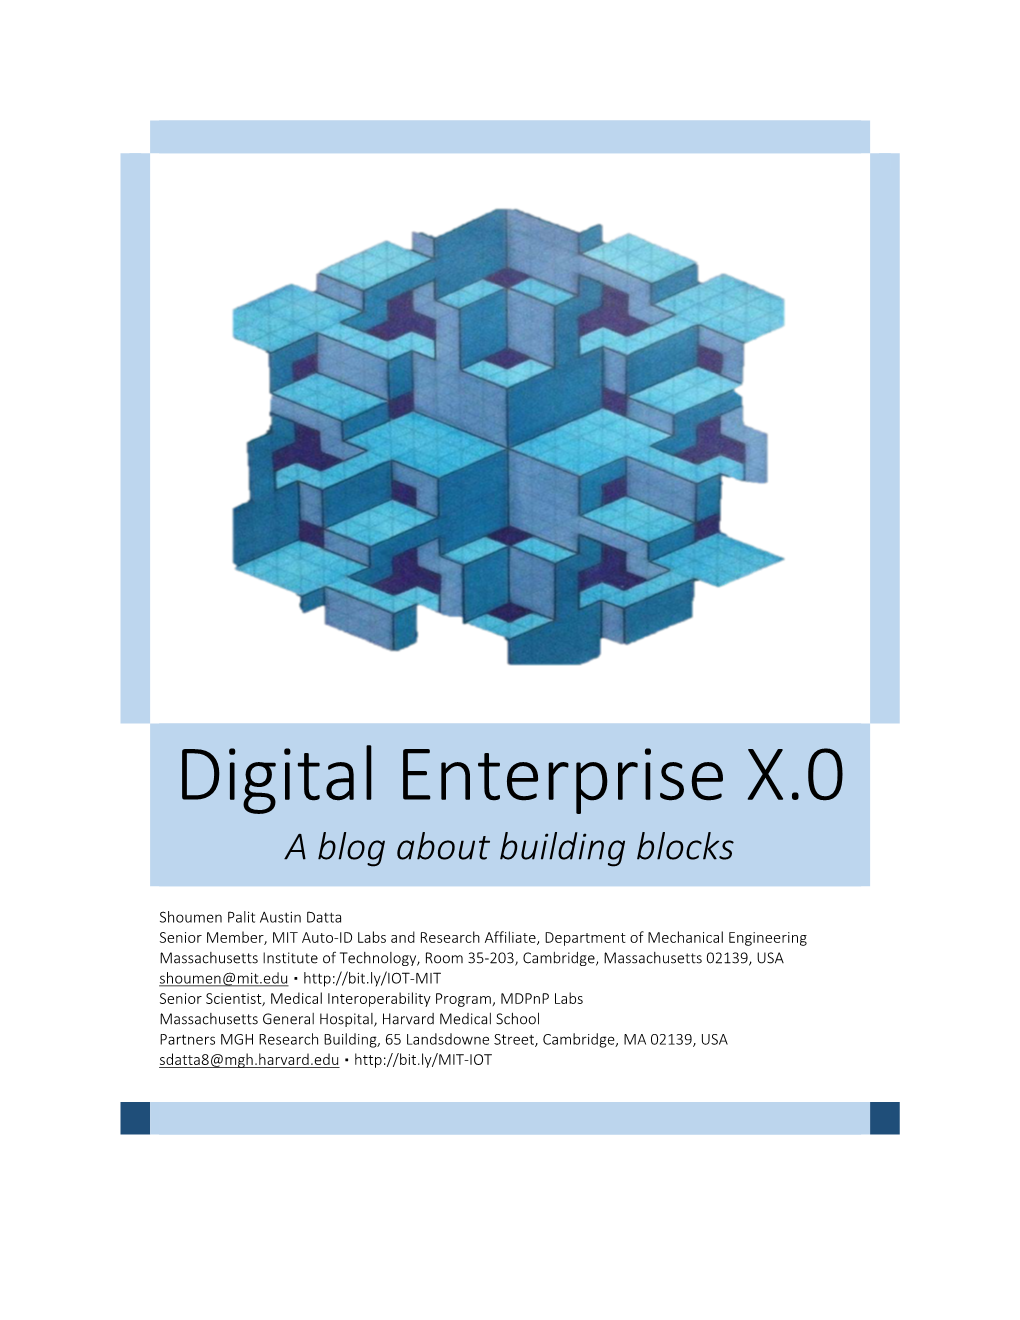 Digital Enterprise X.0 a Blog About Building Blocks